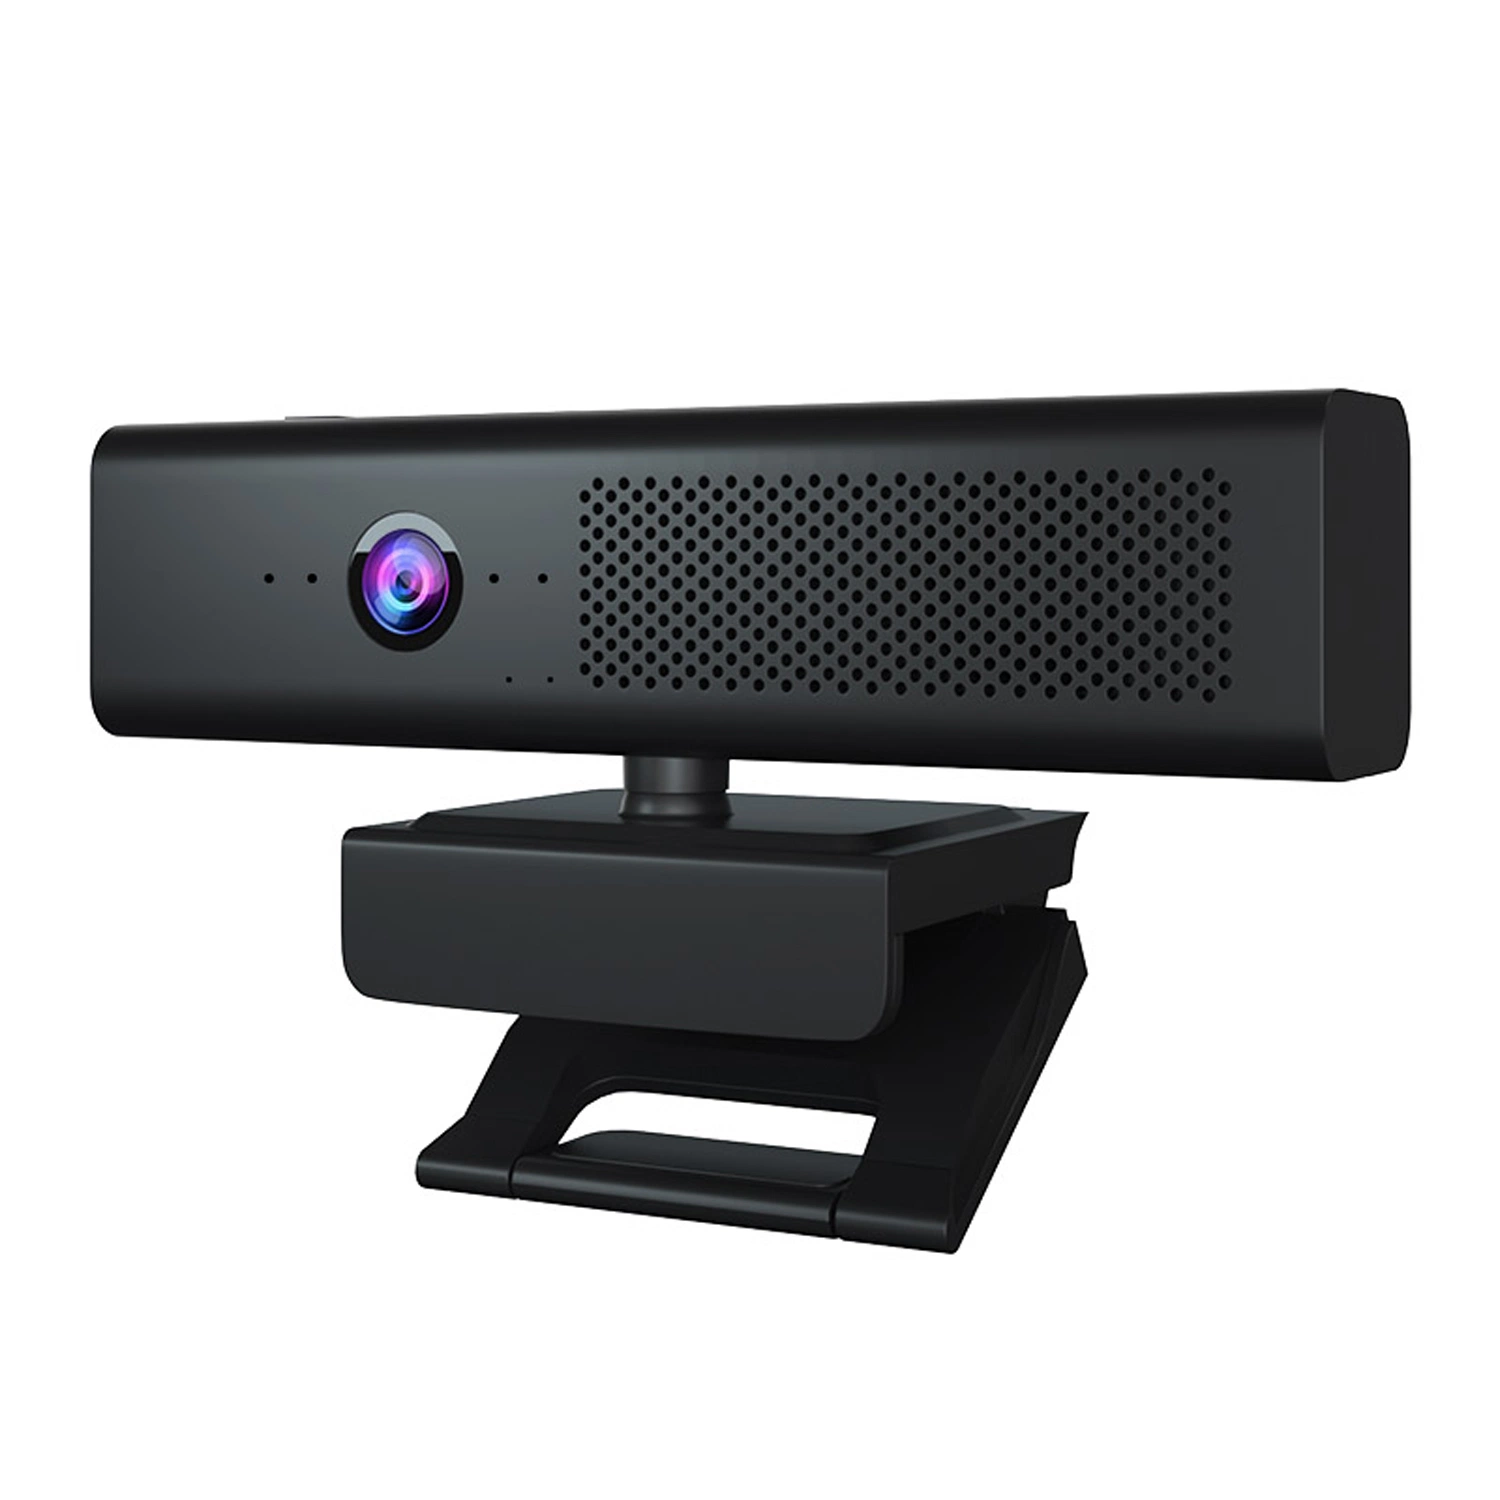 Escritorio del portátil mini equipo de la cámara de seguridad CCTV Webcam PC Digital